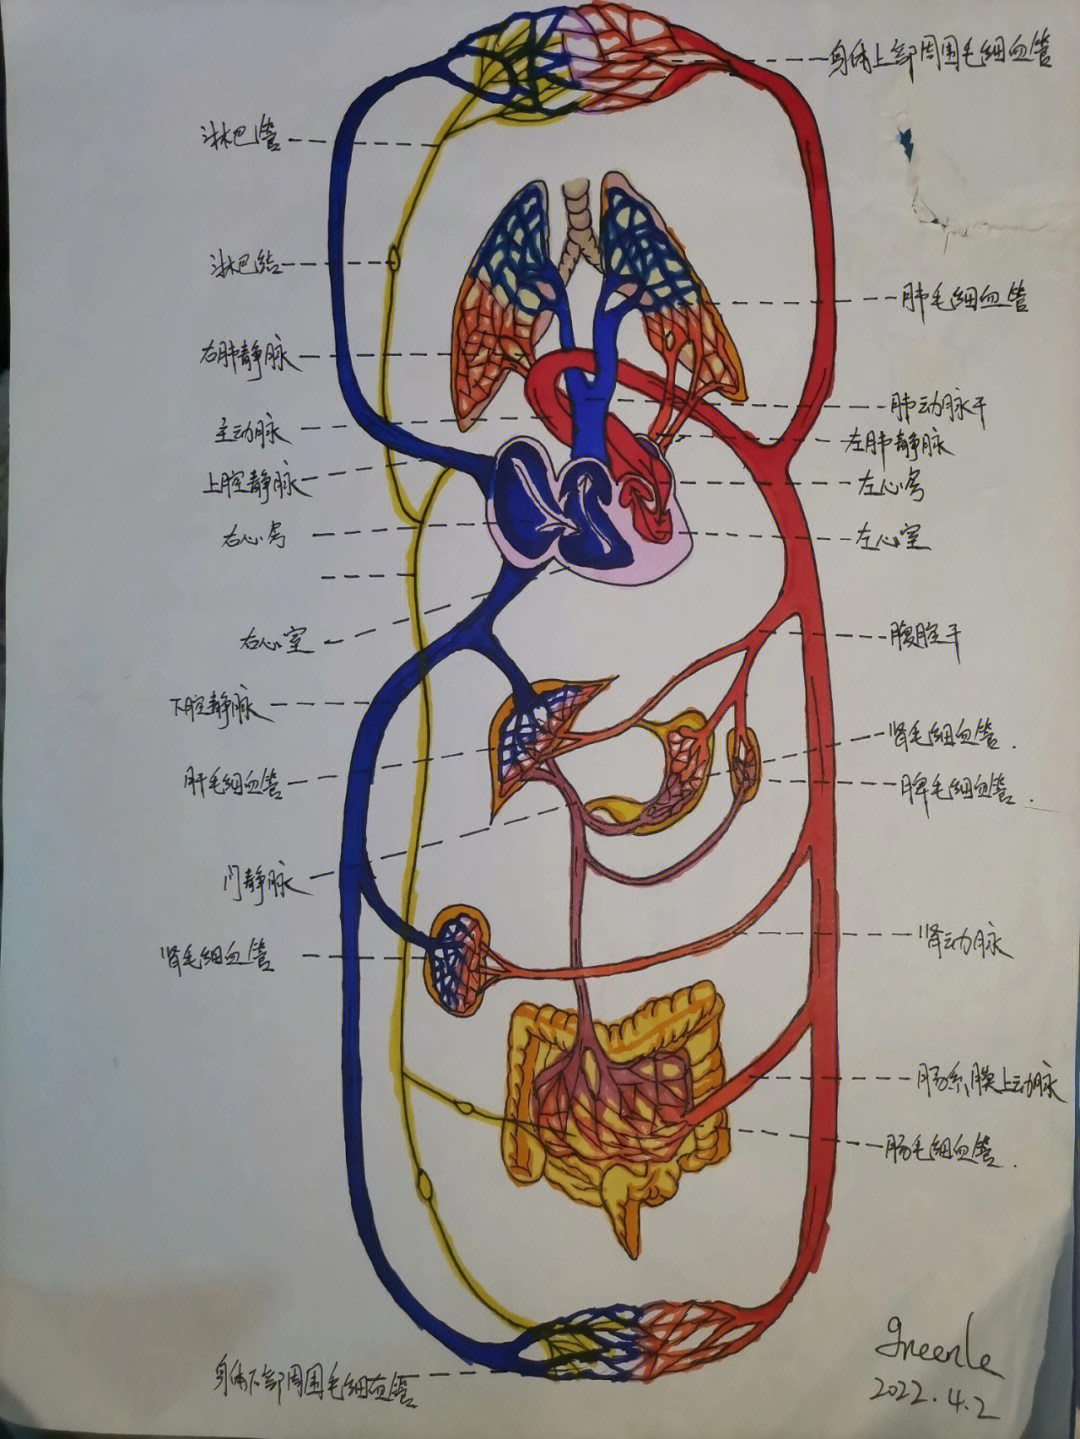 解剖学循环系统手绘图图片